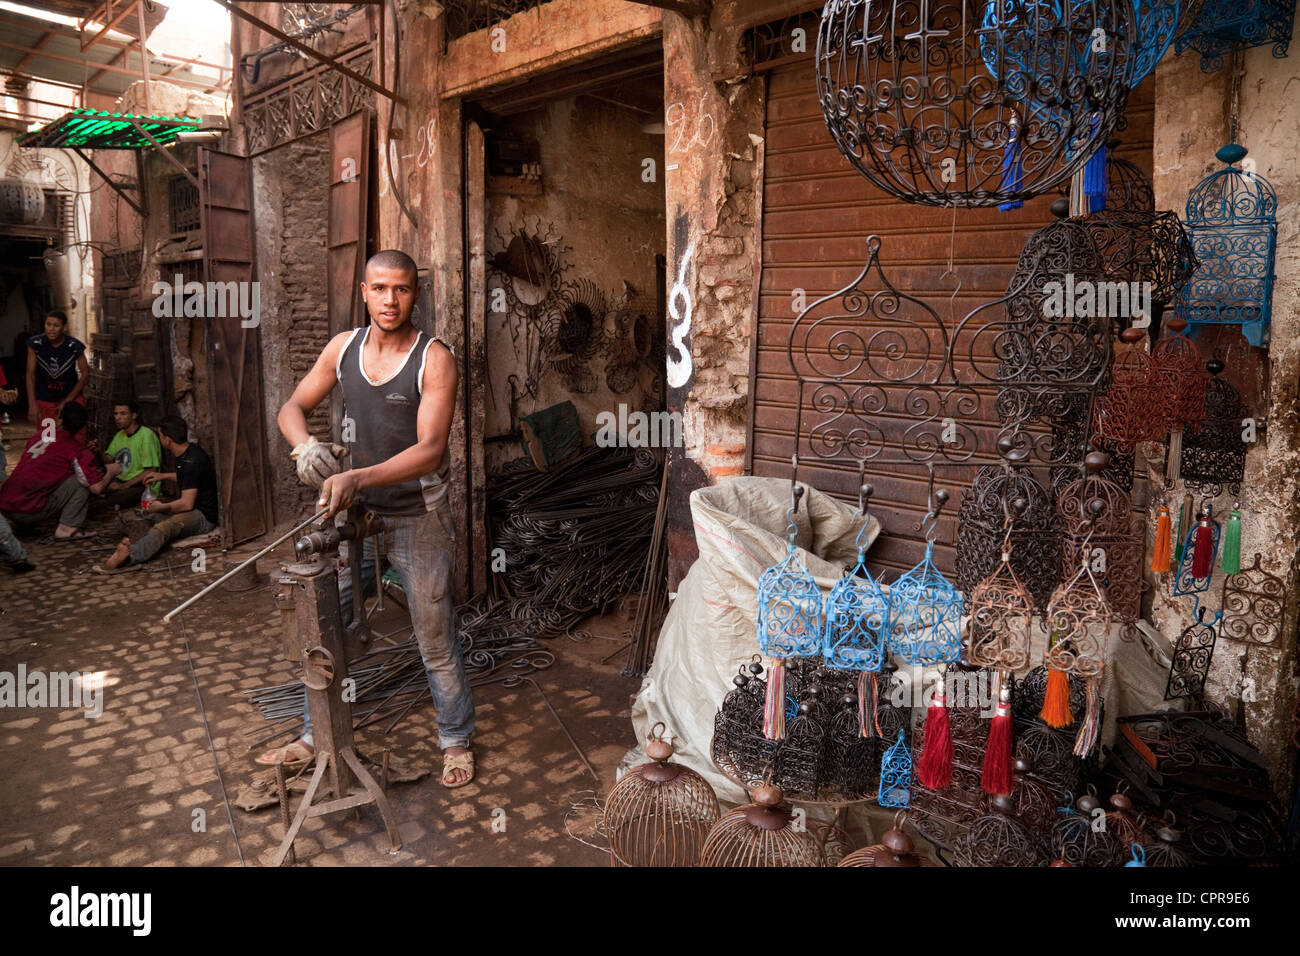 Marrakech - artigianato del ferro battuto artigiano lavora nel Souk della Medina di Marrakech, Marocco, Africa Foto Stock